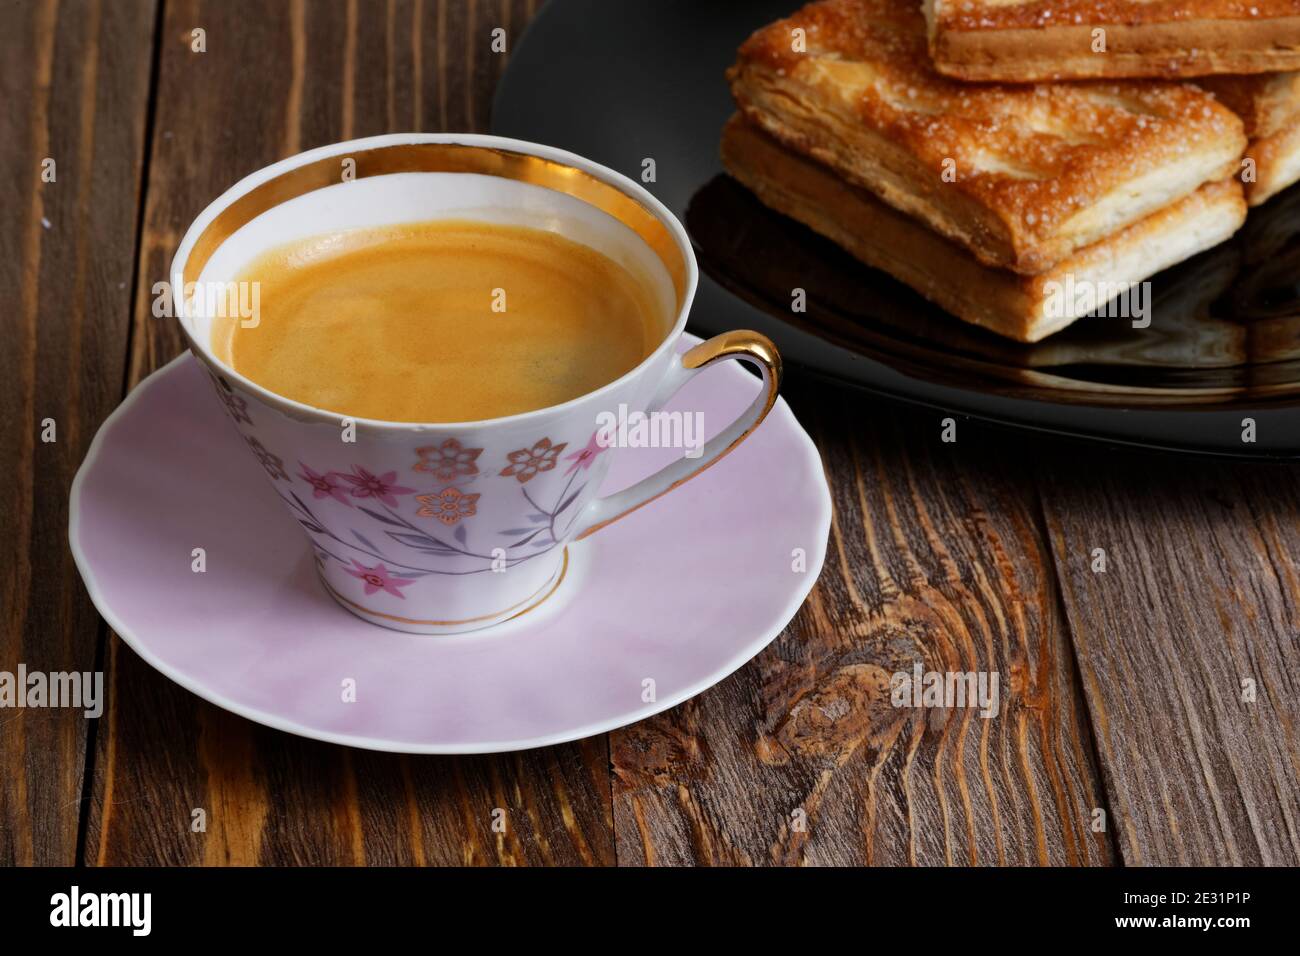 Kekse und eine Tasse Kaffee auf dem dunklen Holztisch. Geringer Fokus. Stockfoto